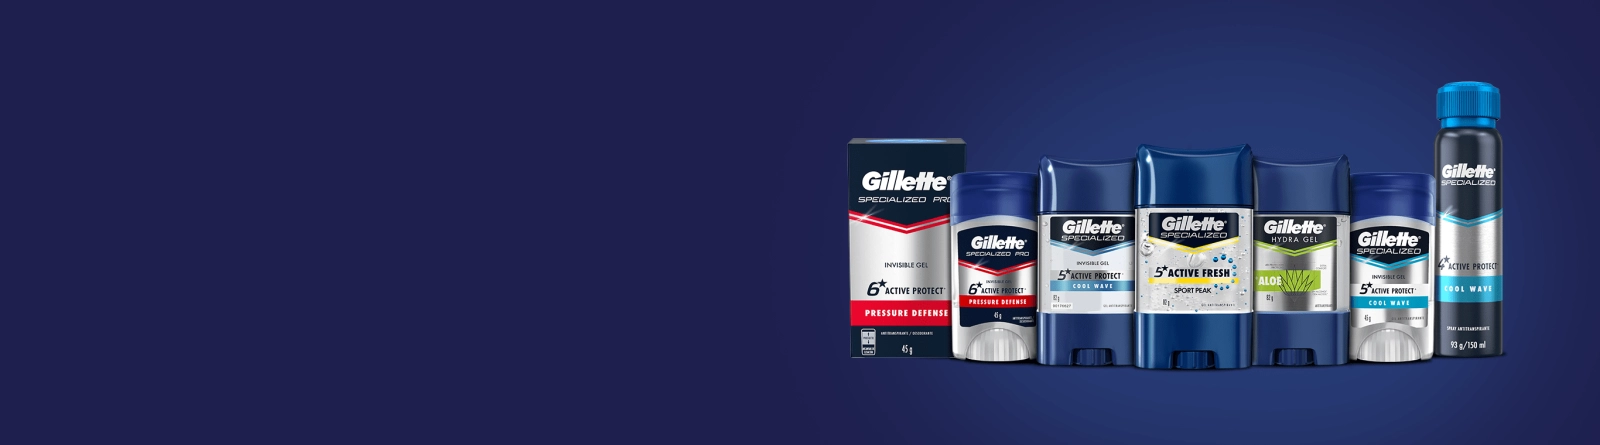 Complementa tu kit de productos de cuidado personal con Desodorantes y Antitranspirantes Gillette